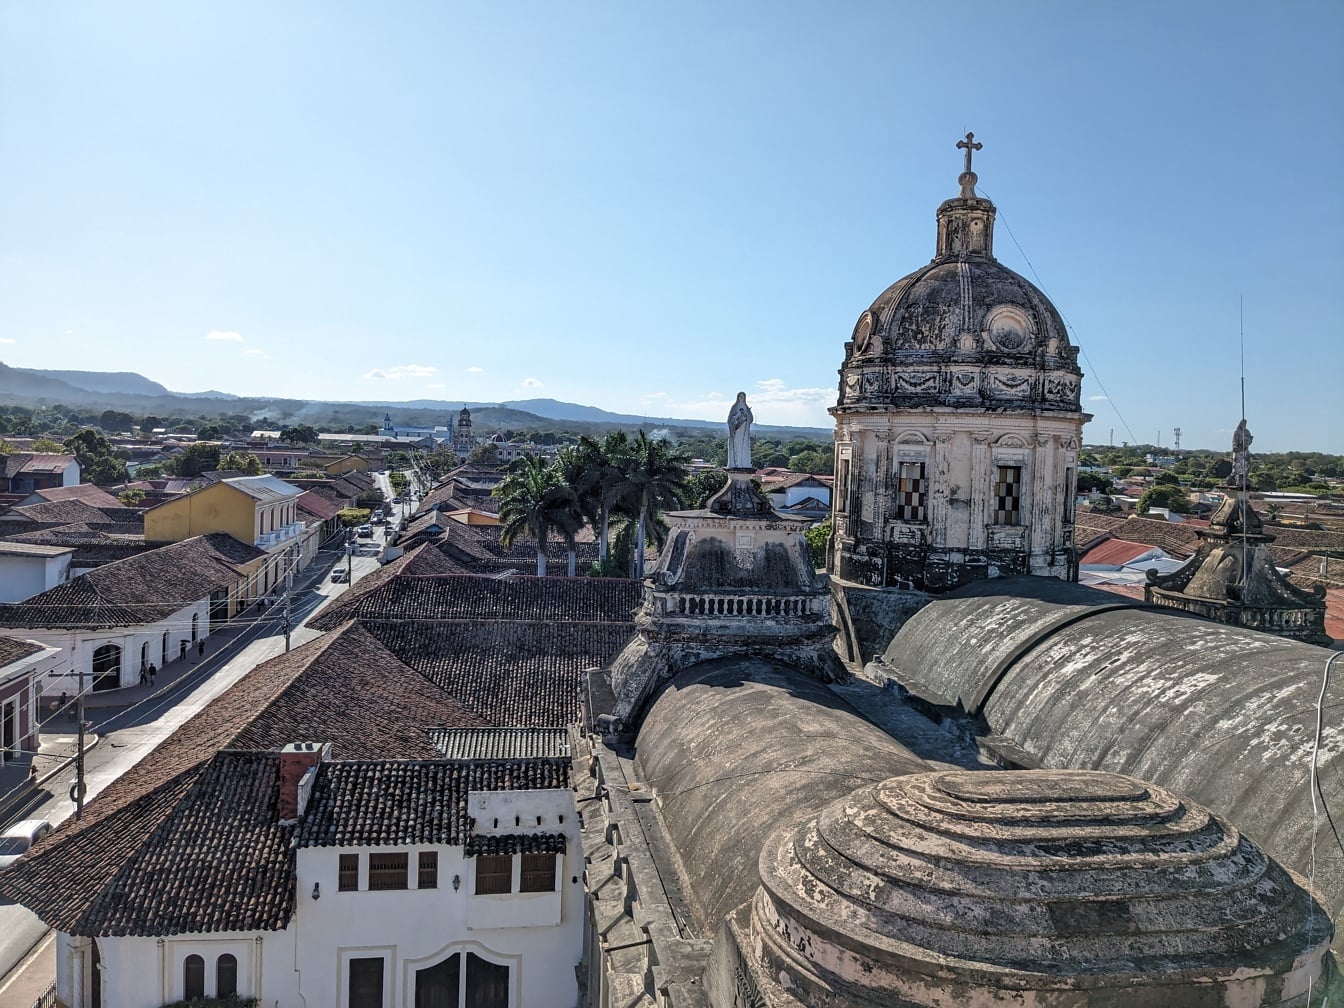 Edificios coloniales en el centro de Granada en Nicaragua con azotea de la iglesia de la Merced